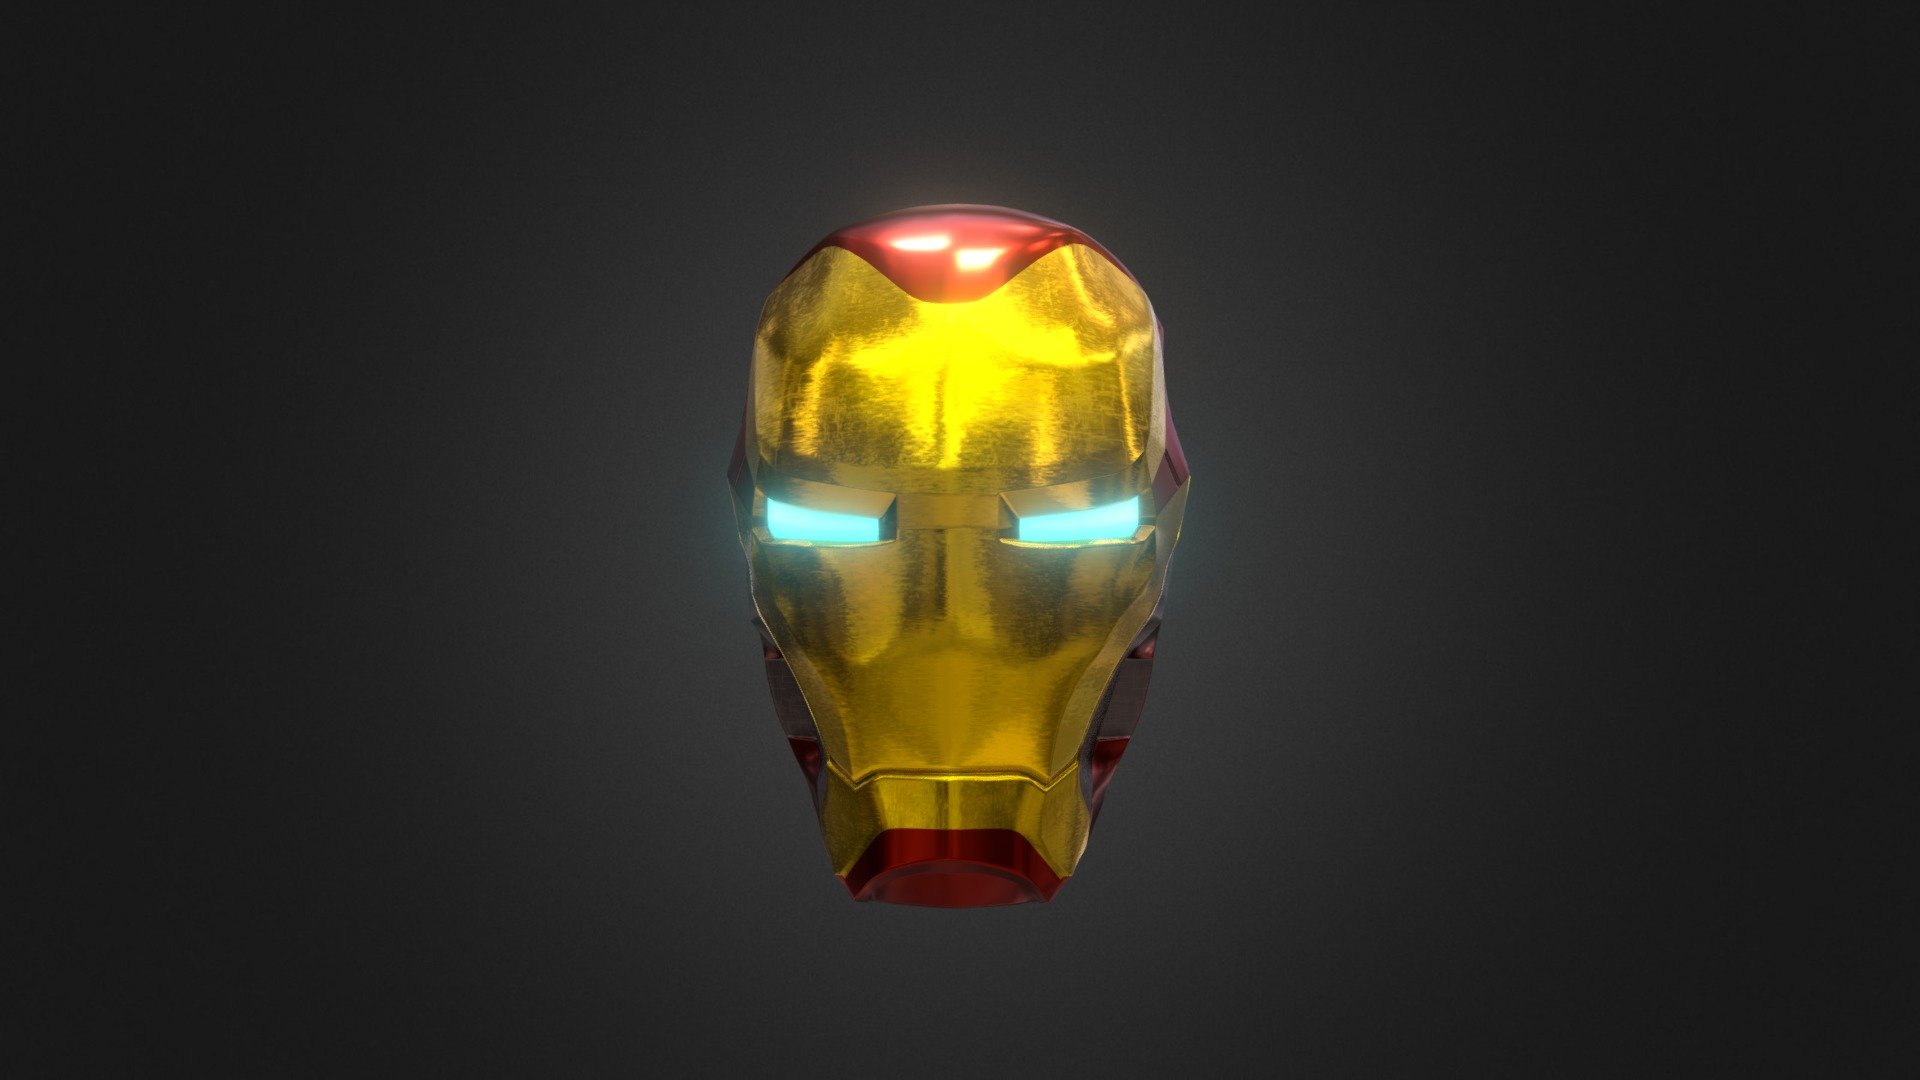 Iron Man - 3D model by artu09lego [5aedf2b] - Sketchfab